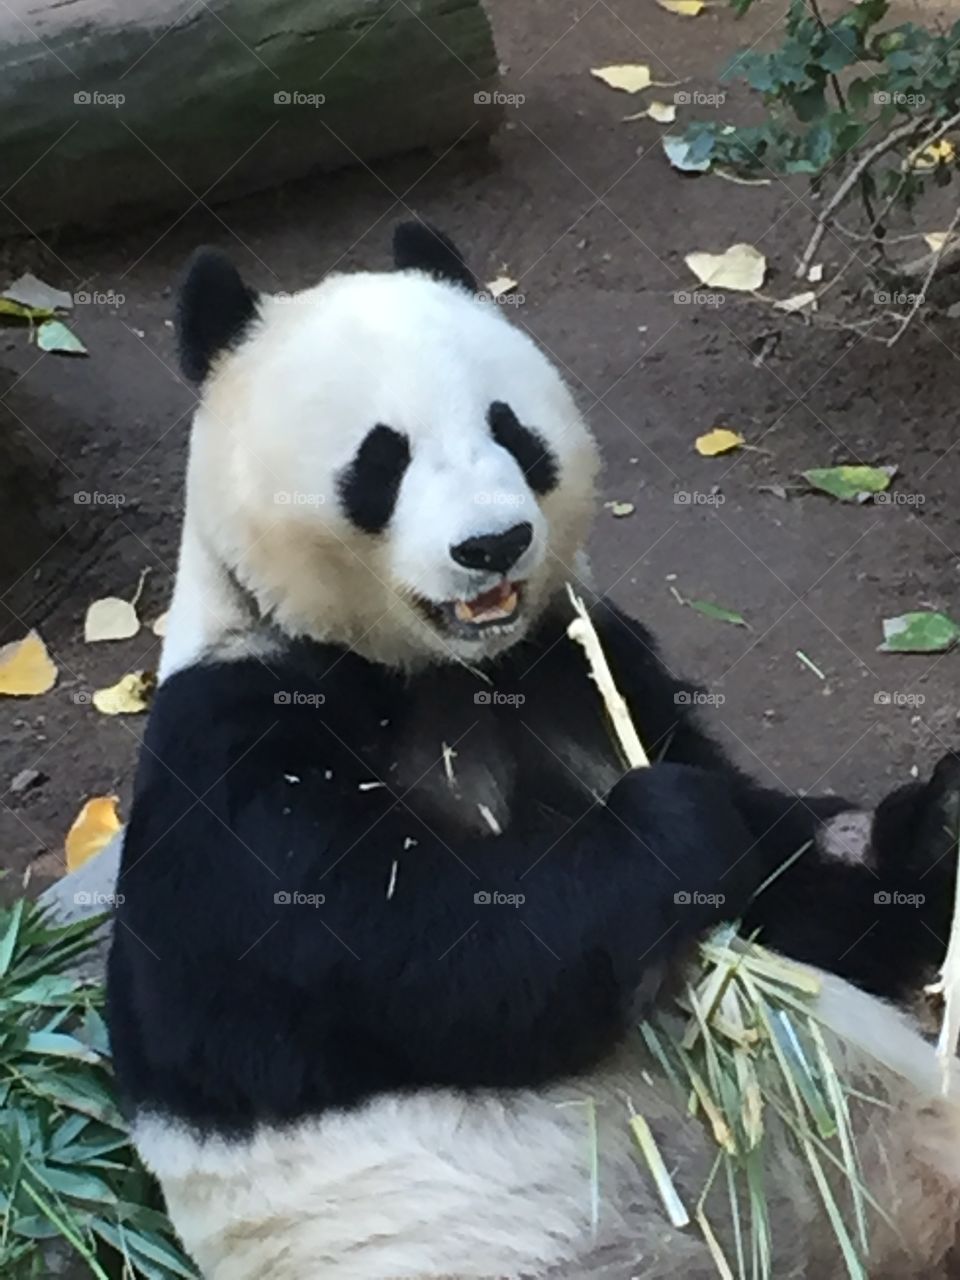 Up close of a very happy panda bear eating bamboo and enjoying life